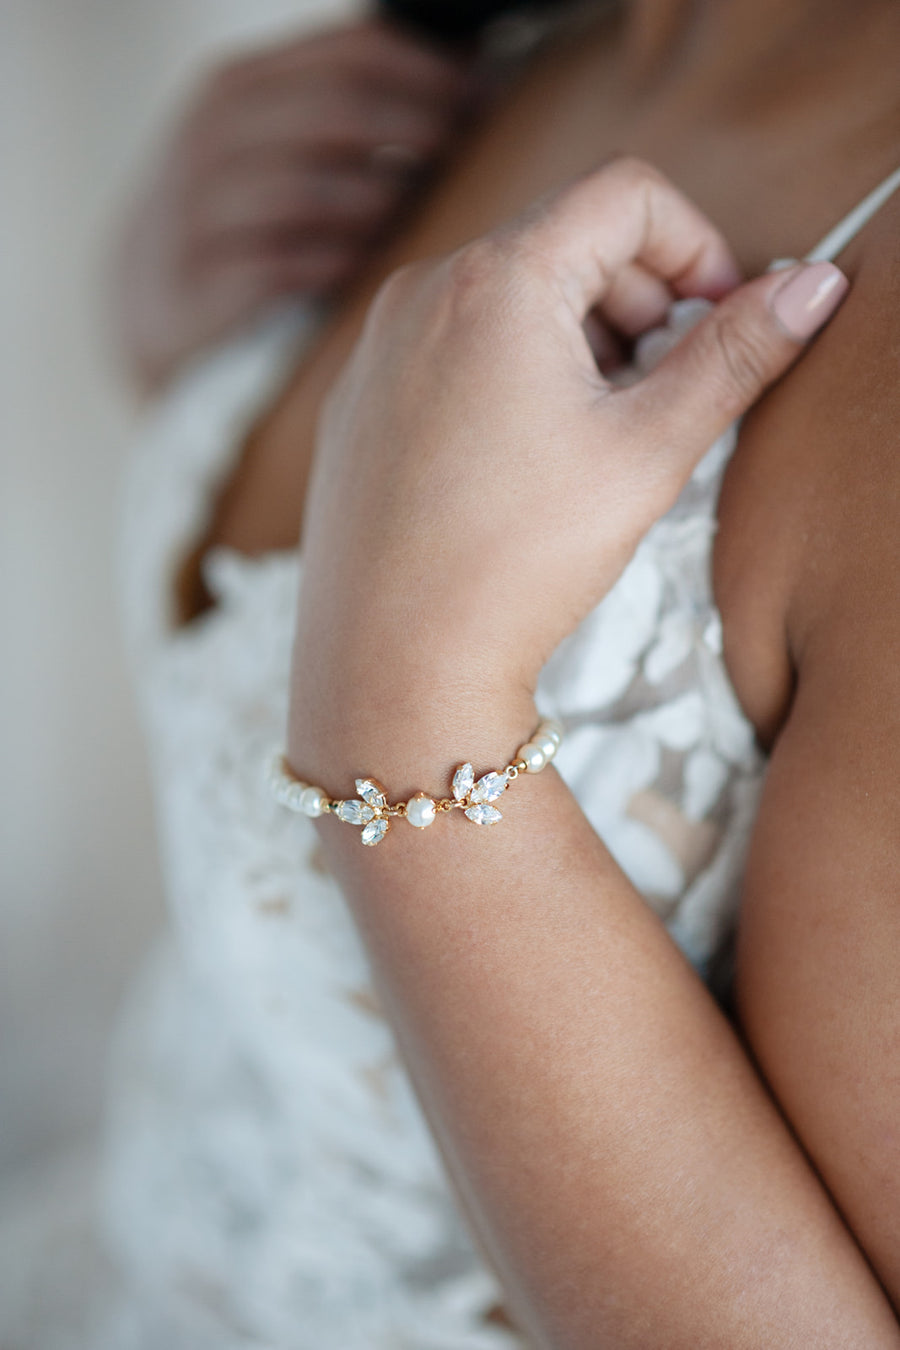 Bride wearing crystal and pearl bridal bracelet by Joanna Bisley Designs.